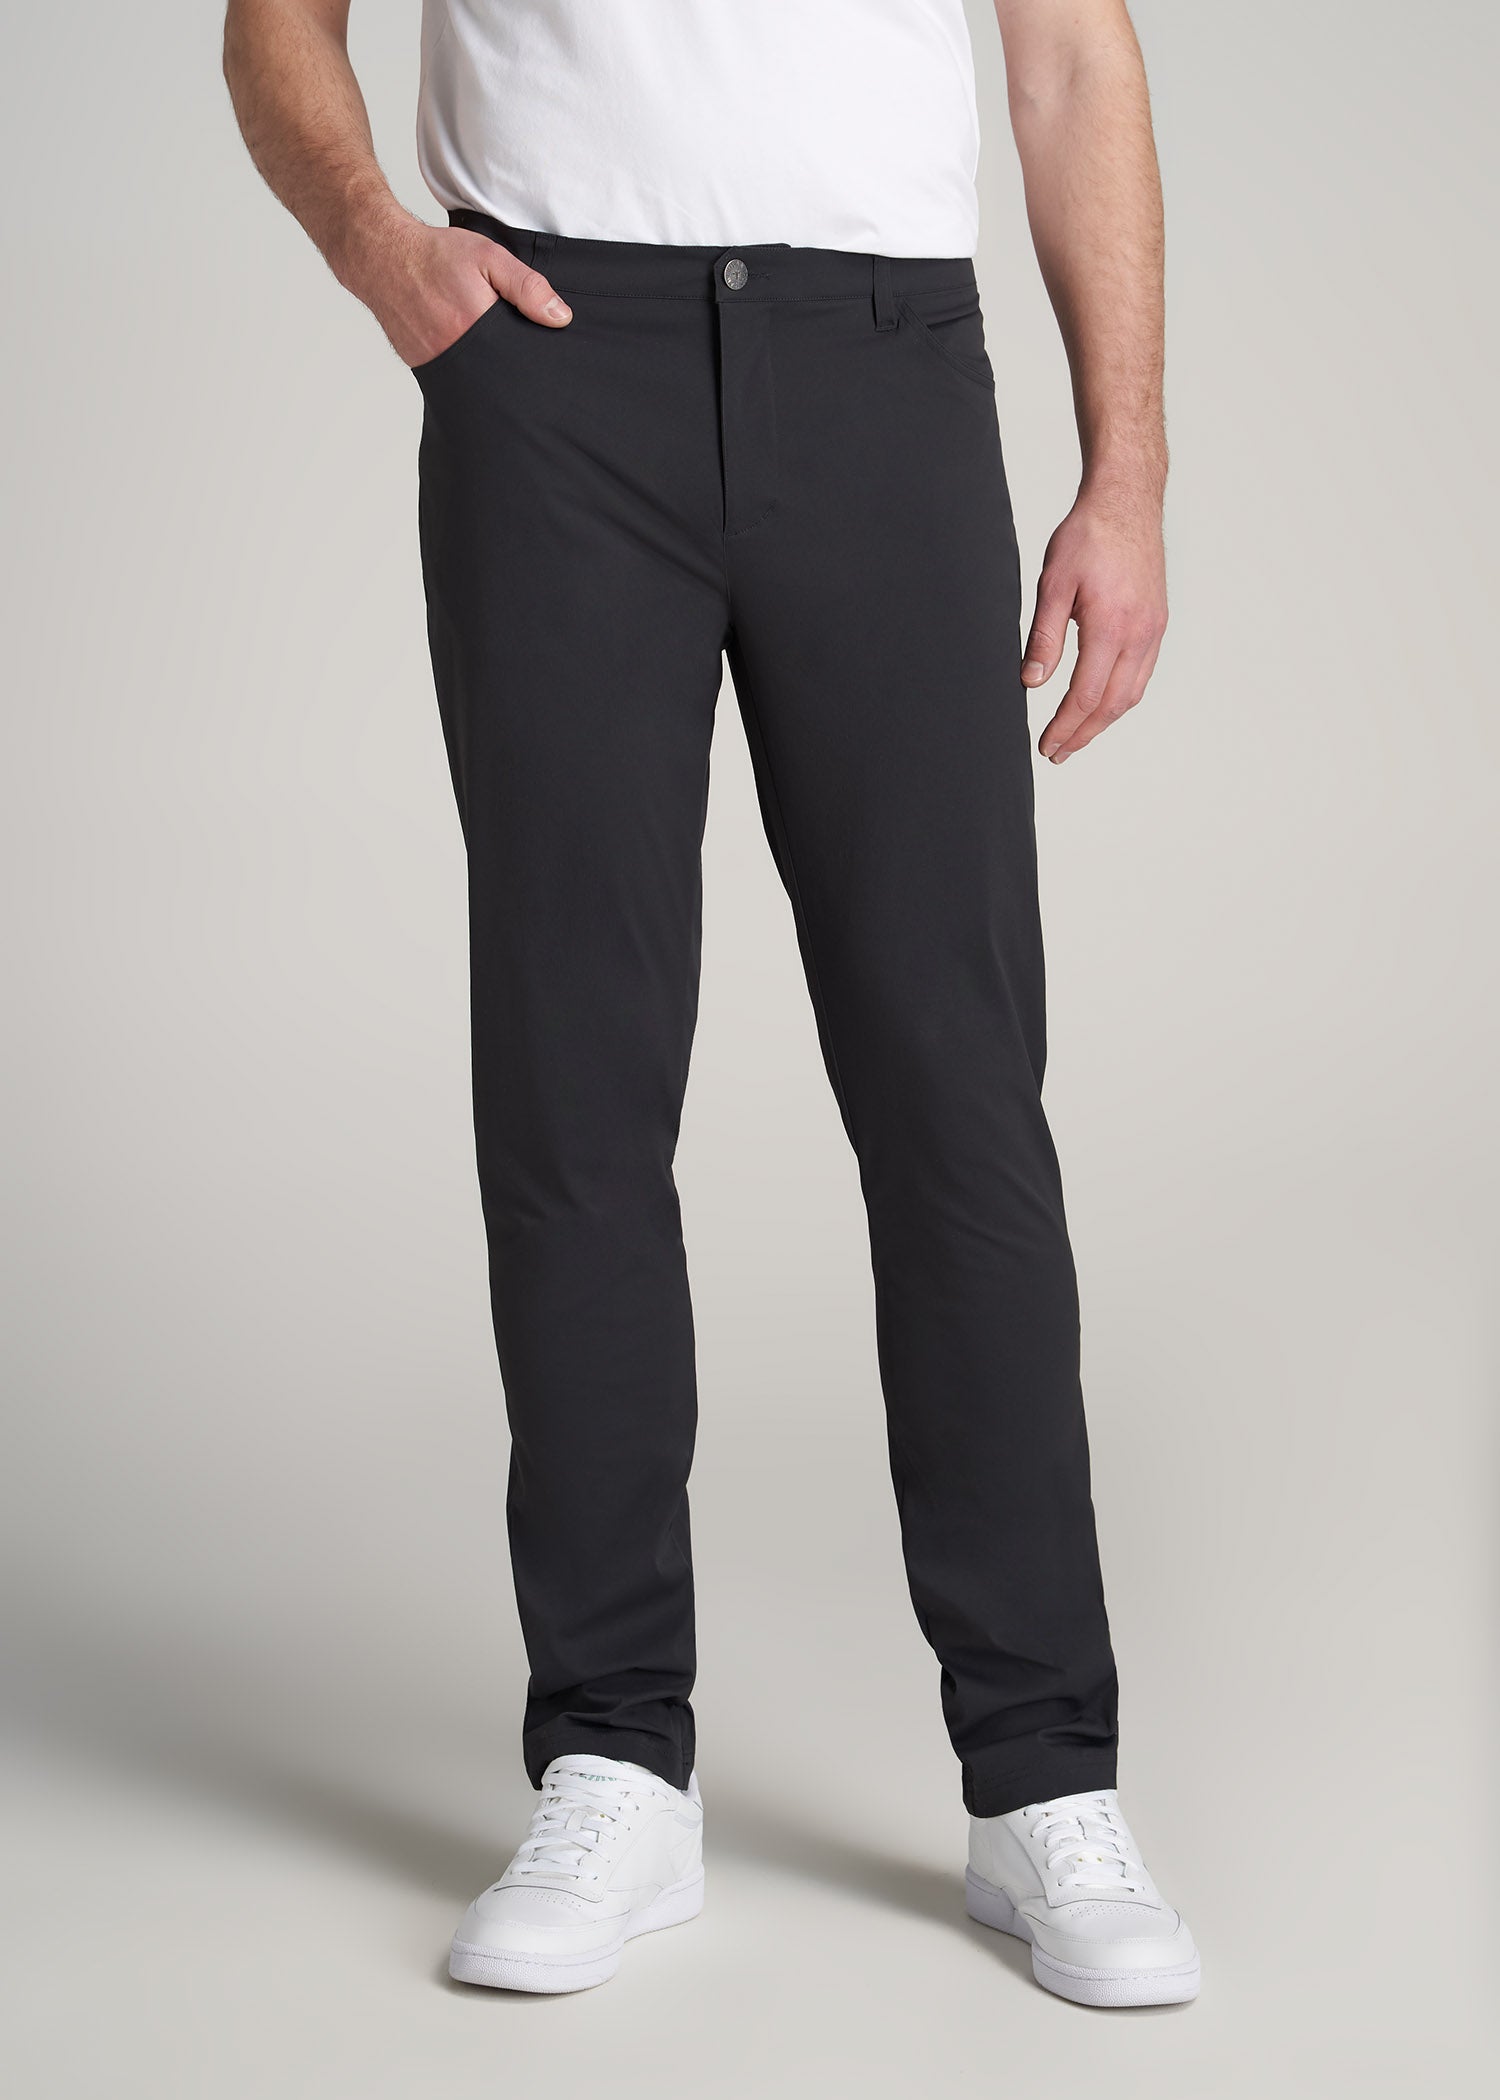 J1 Straight Leg Five Pocket Khaki Pants For Tall Men